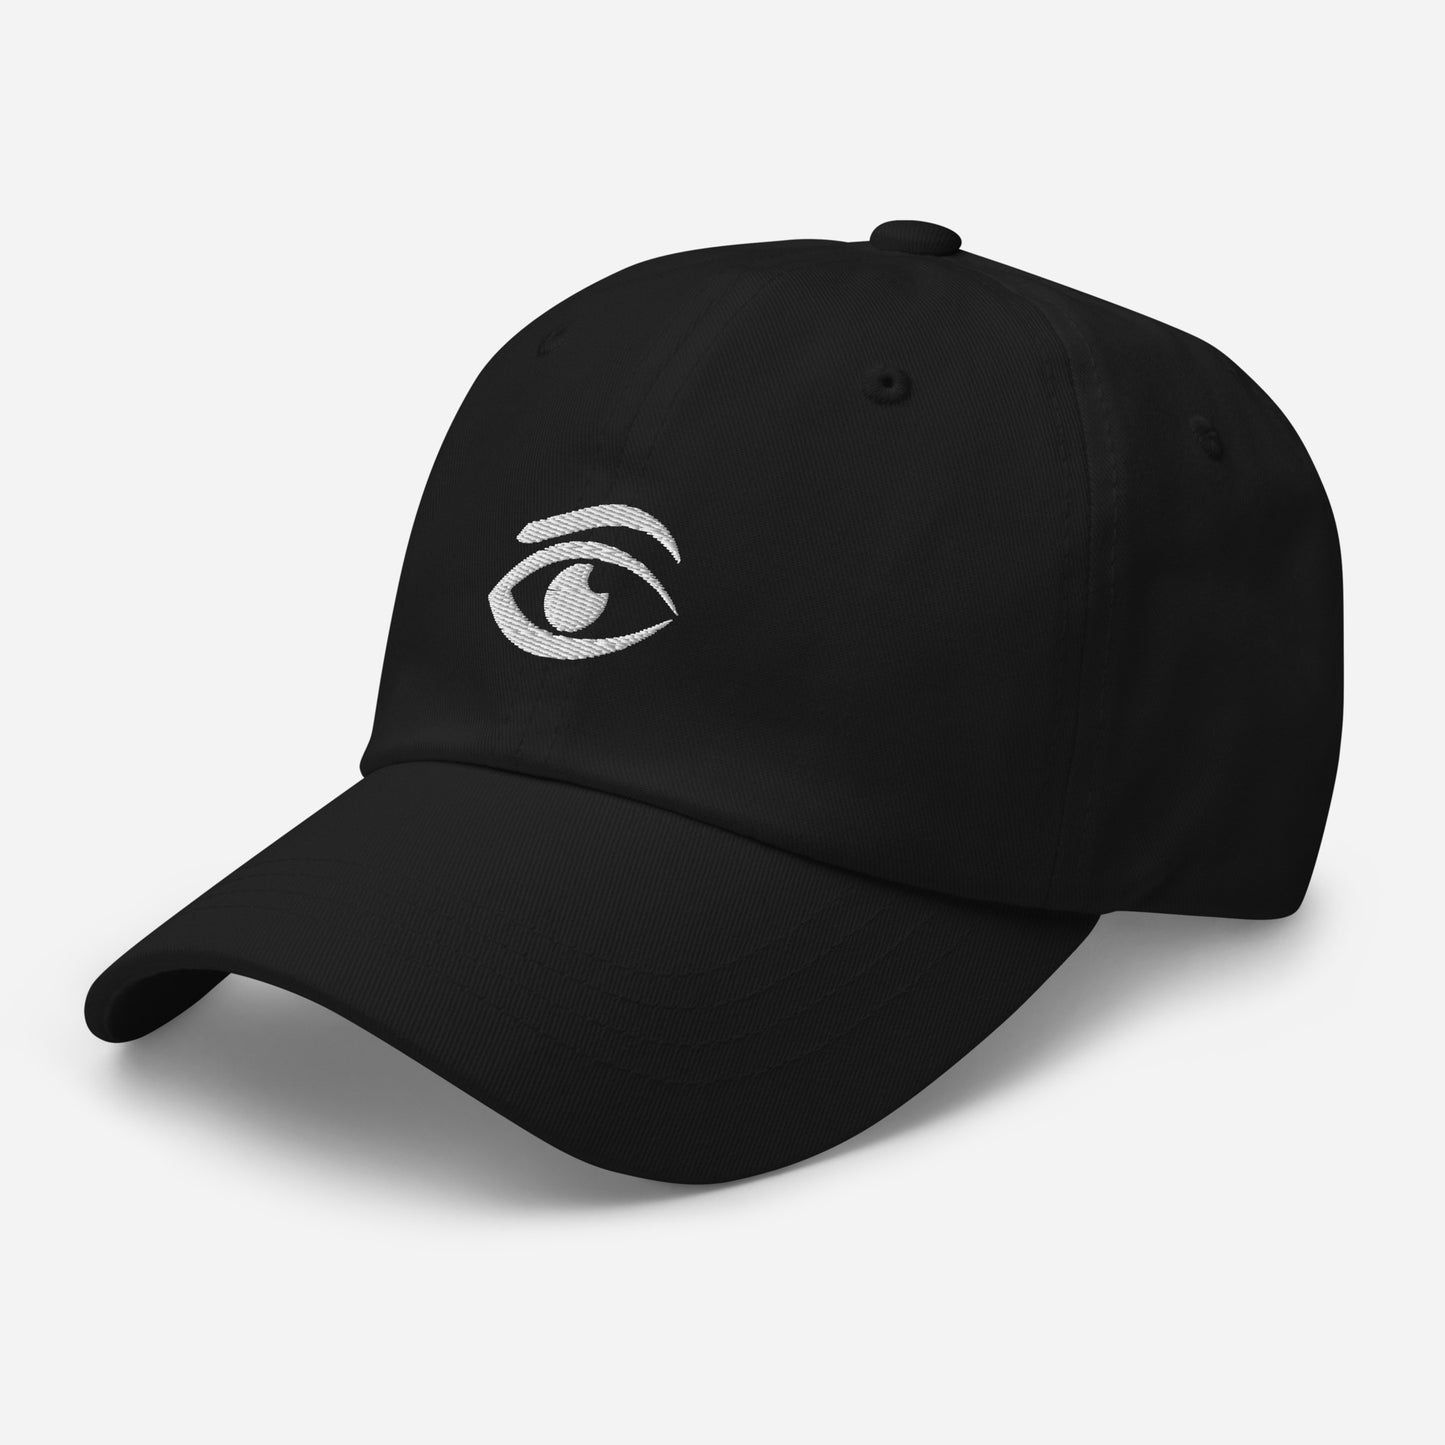 TROY Eyeball - Dad Hat